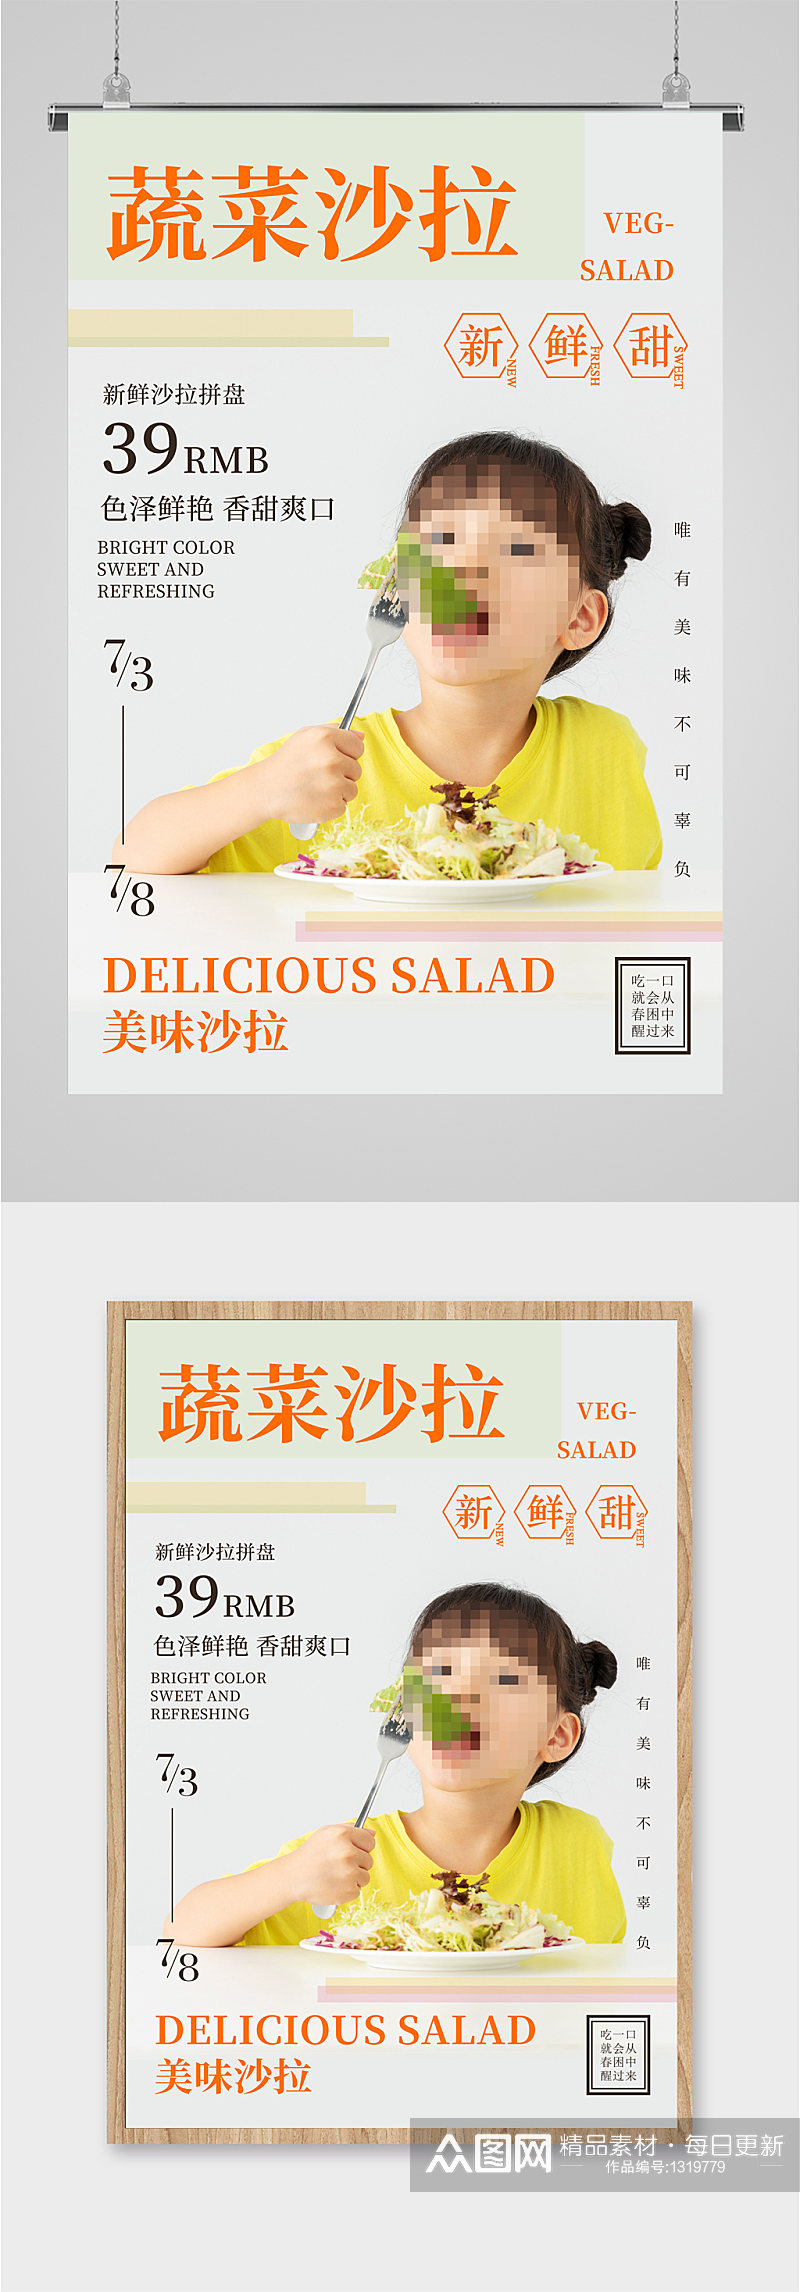 蔬菜沙拉美食宣传海报素材